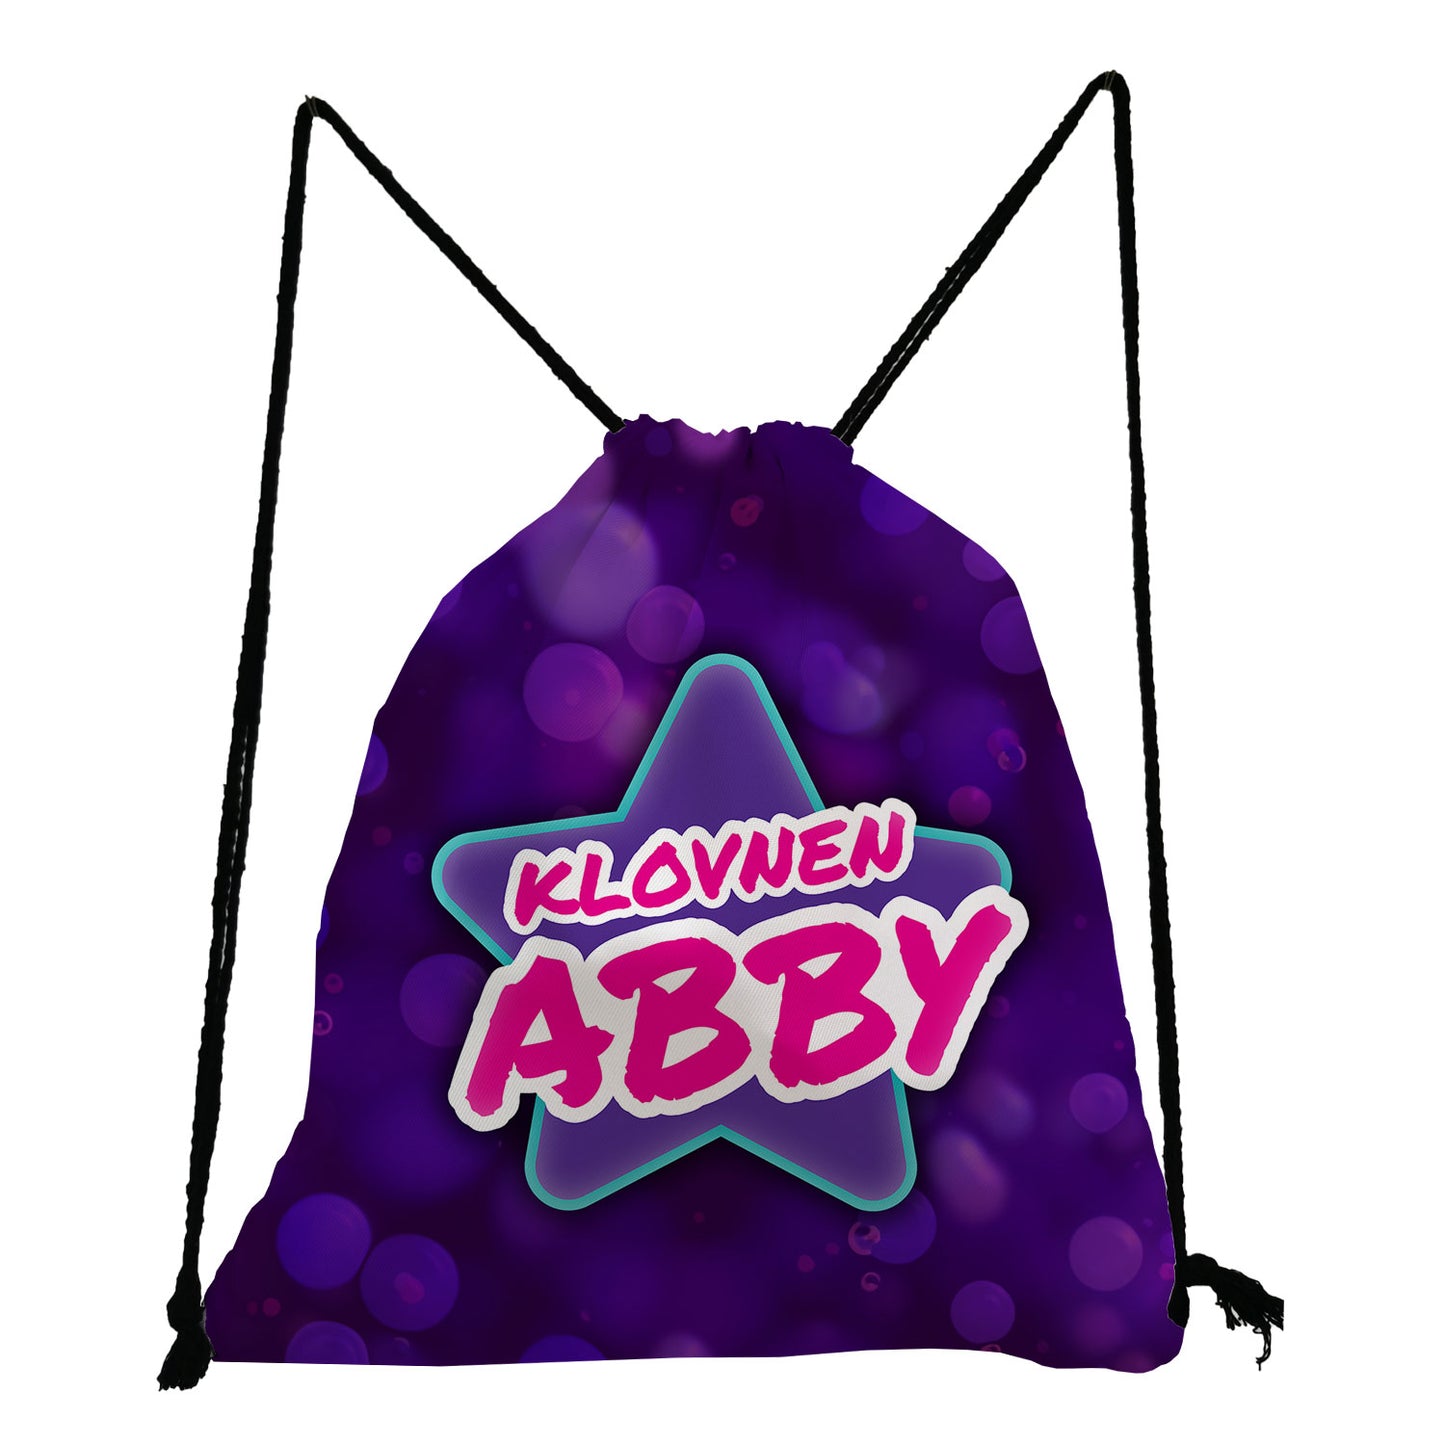 Gym bag med Signature Abby design